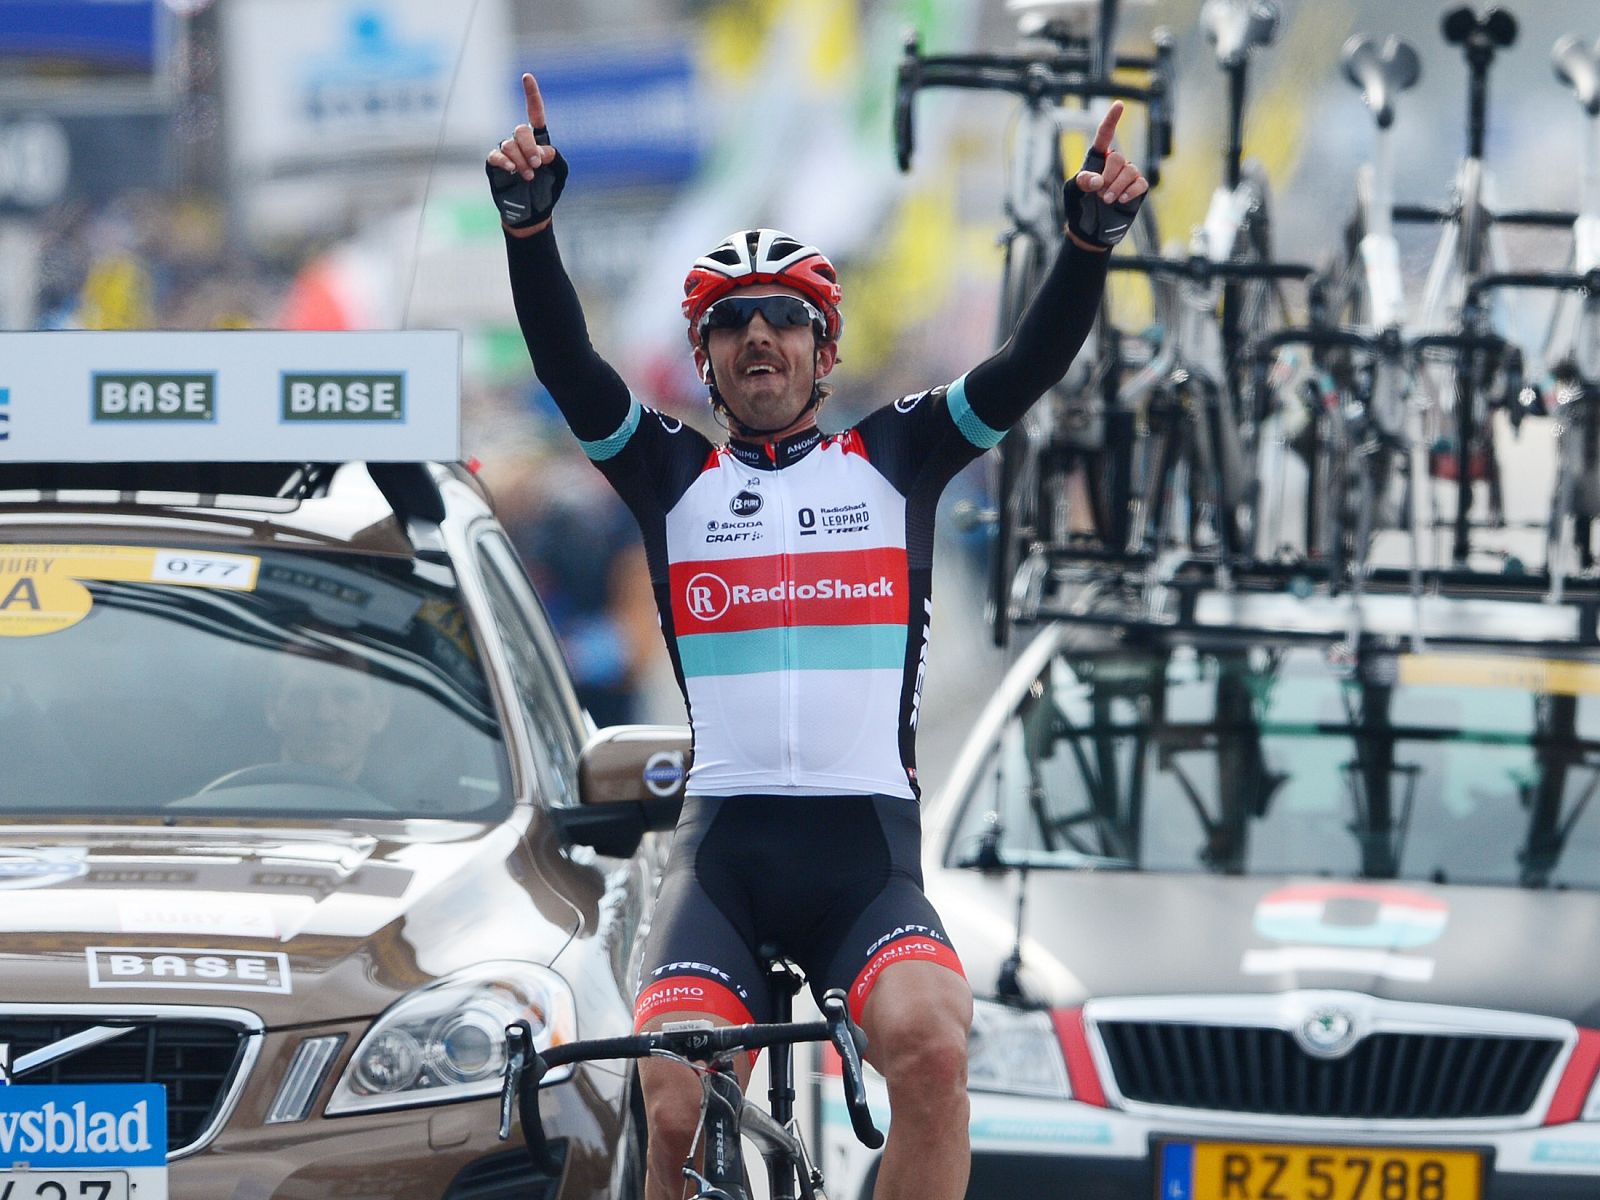 Imagen del suizo Fabian Cancellara entrando en la meta de Oudenaarde.